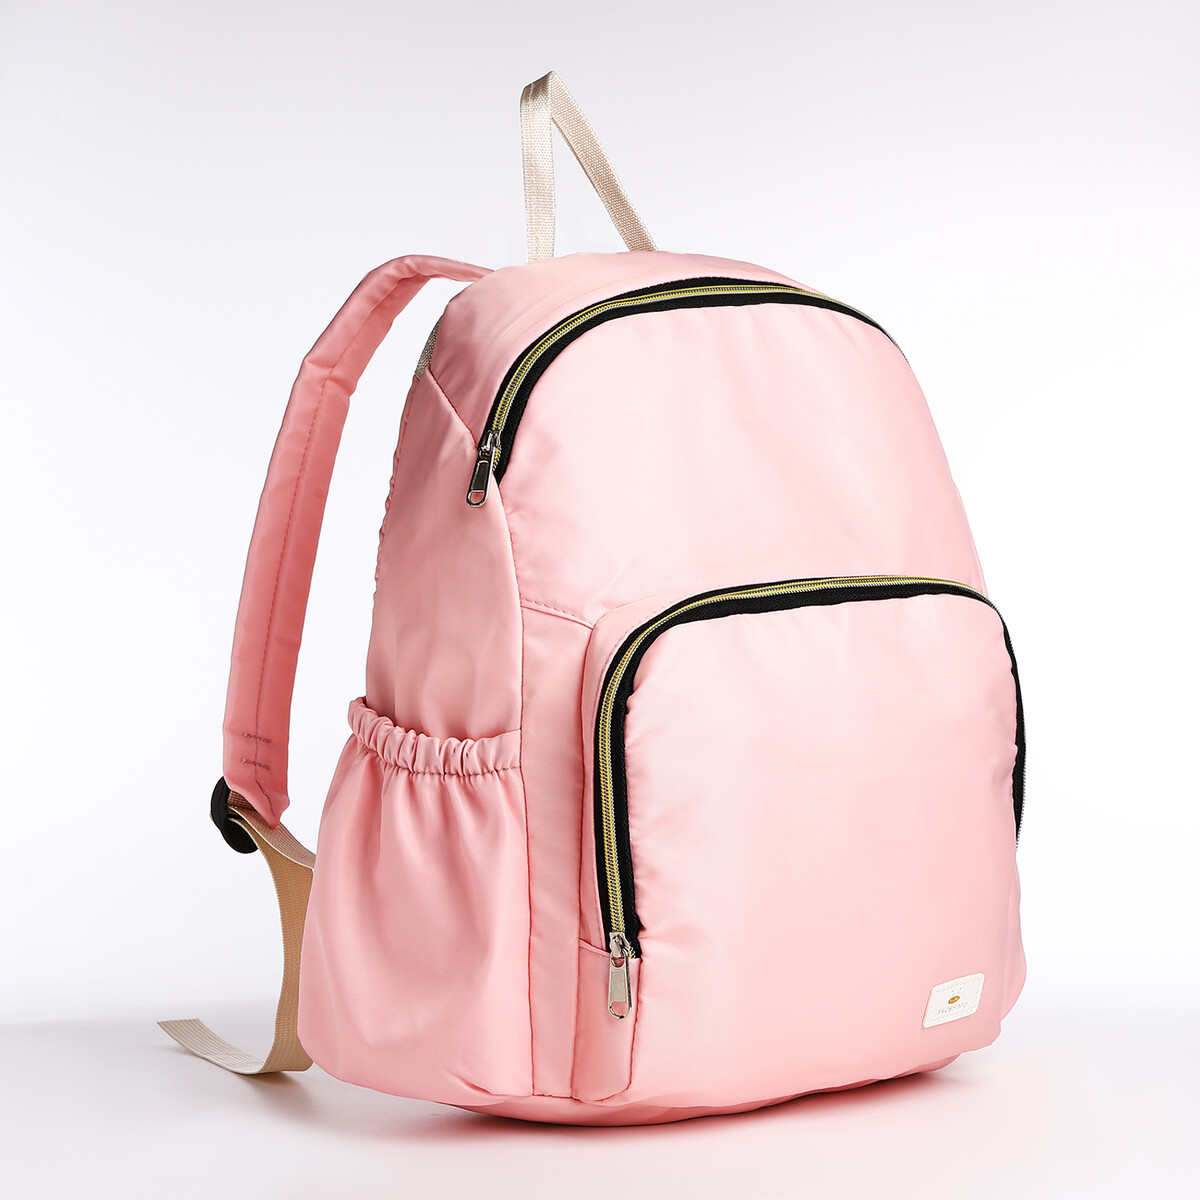 Рюкзак на молнии, цвет розовый рюкзак kingkong i 30 wb 9064 черн средний фоторюкзак